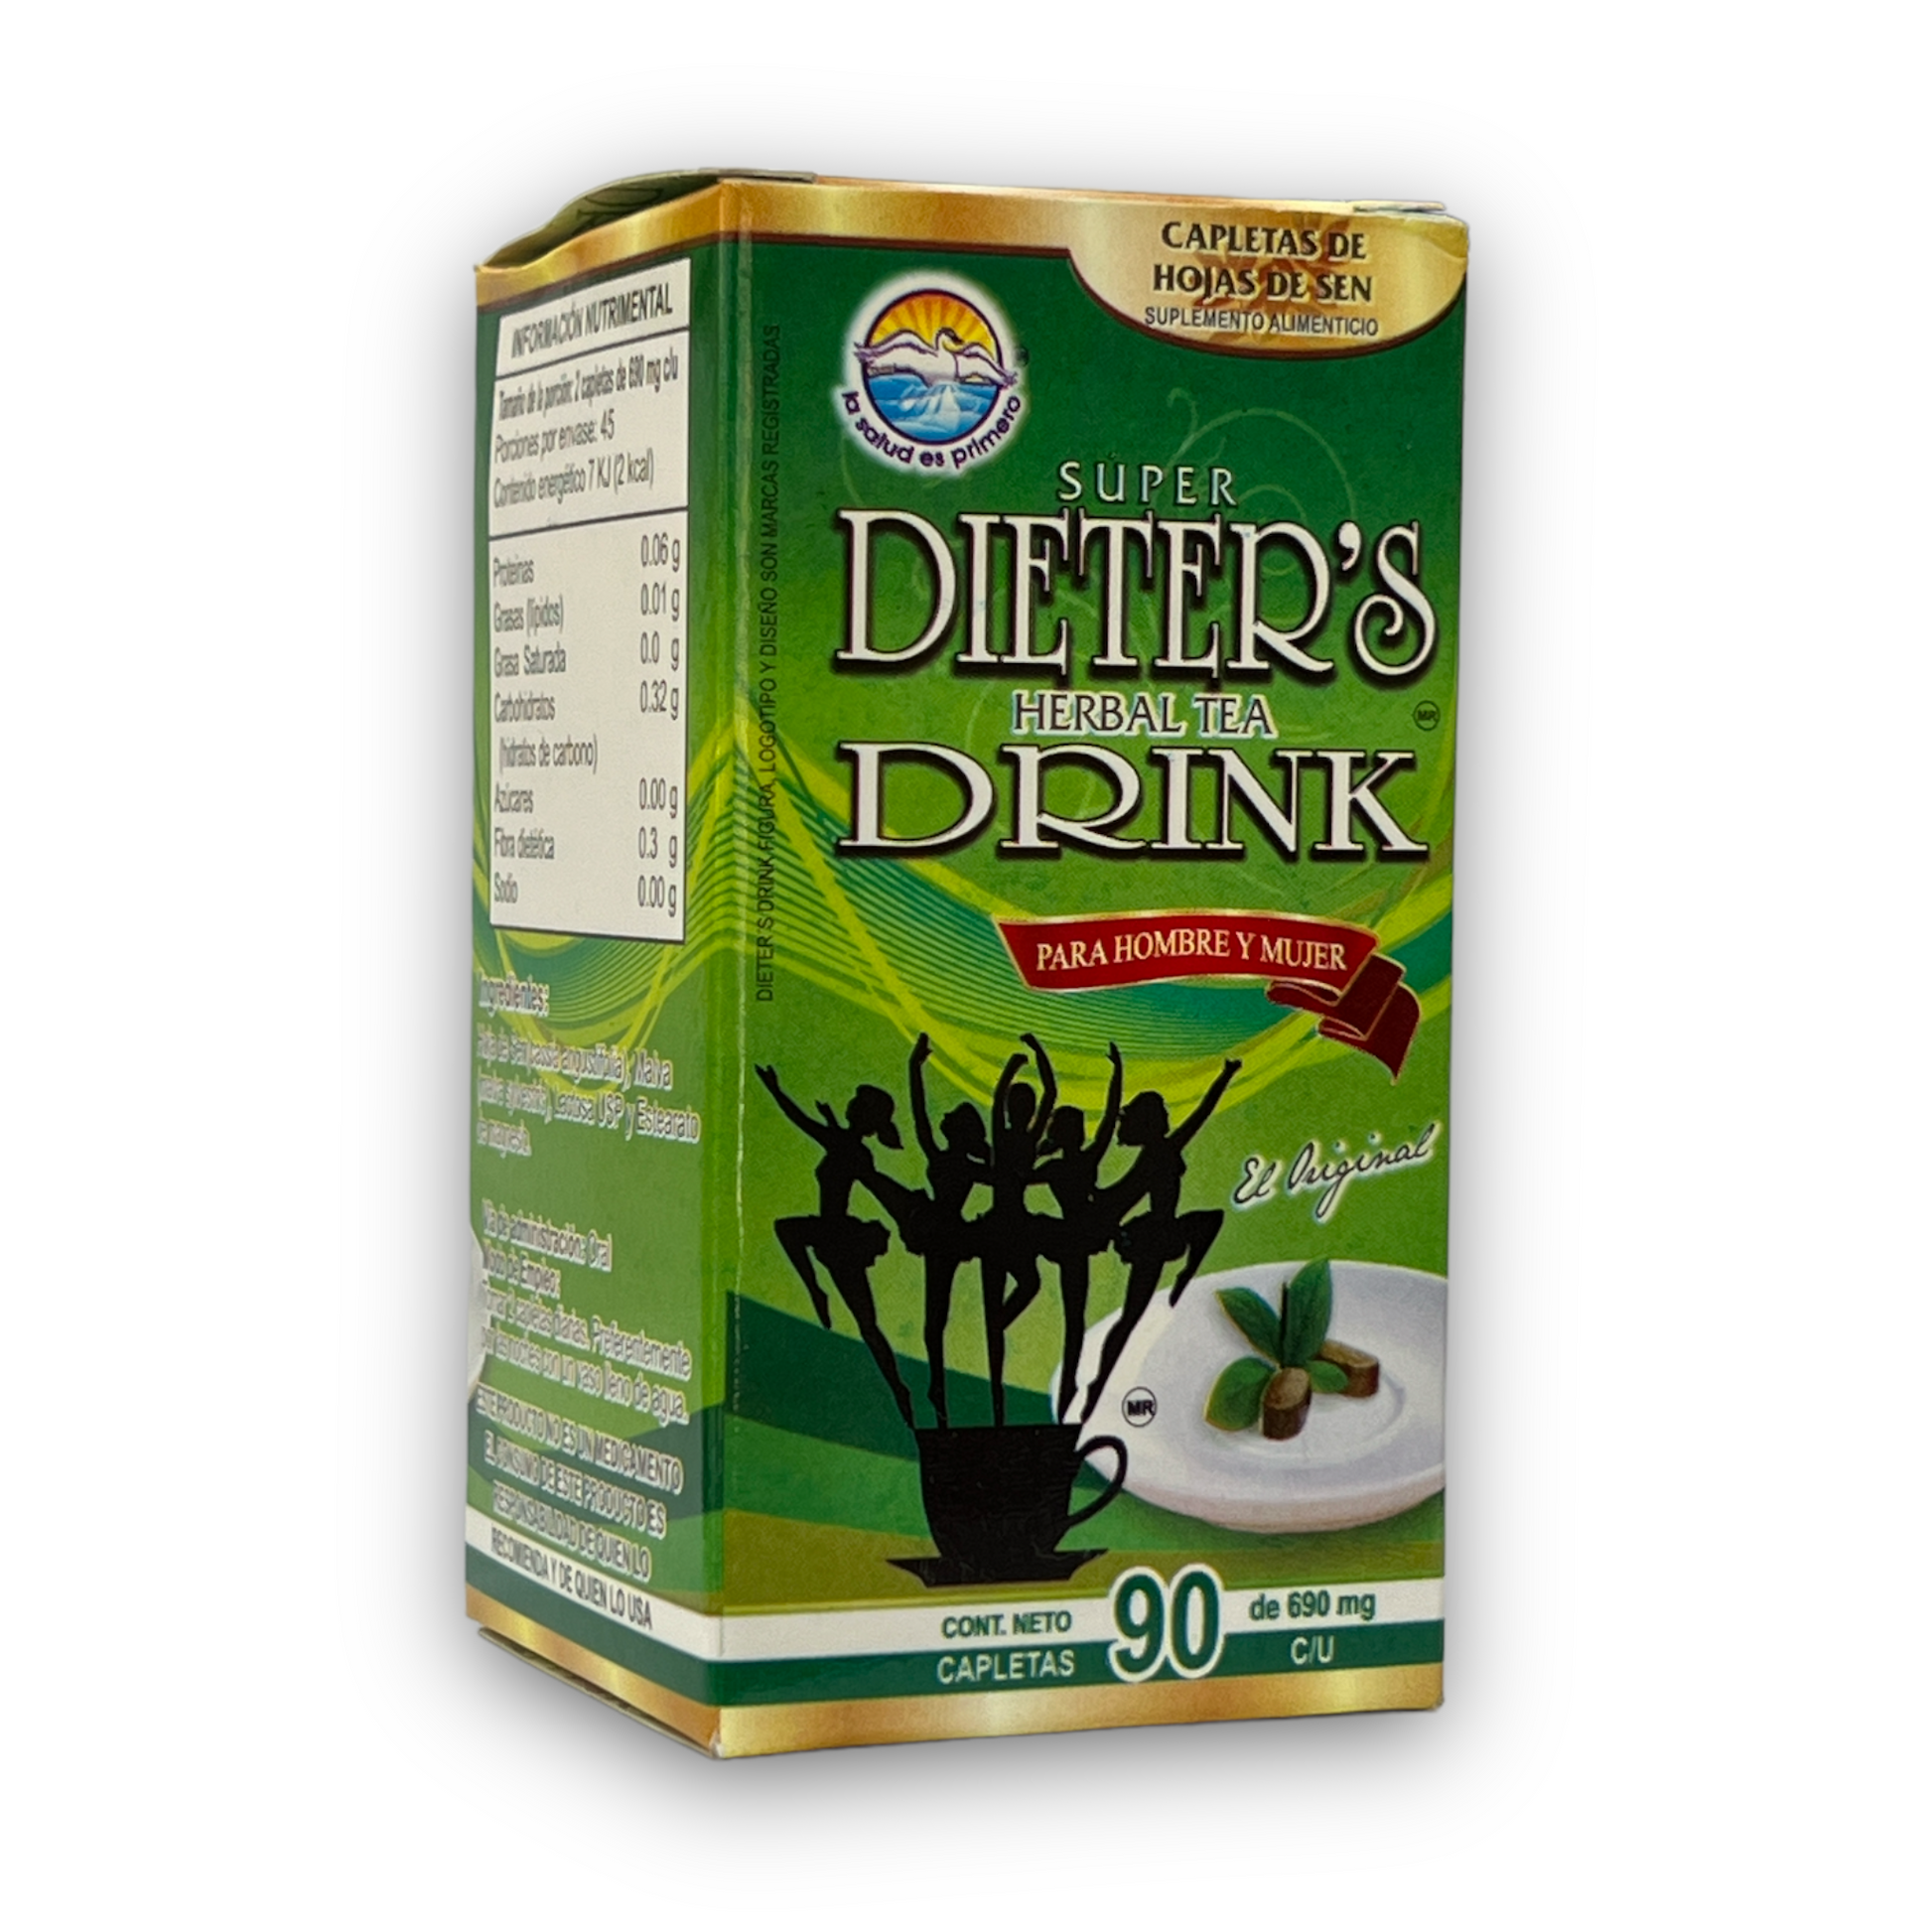 suplemento alimenticio dieter's drink herbal tea 90 cápsulas la salud es primero